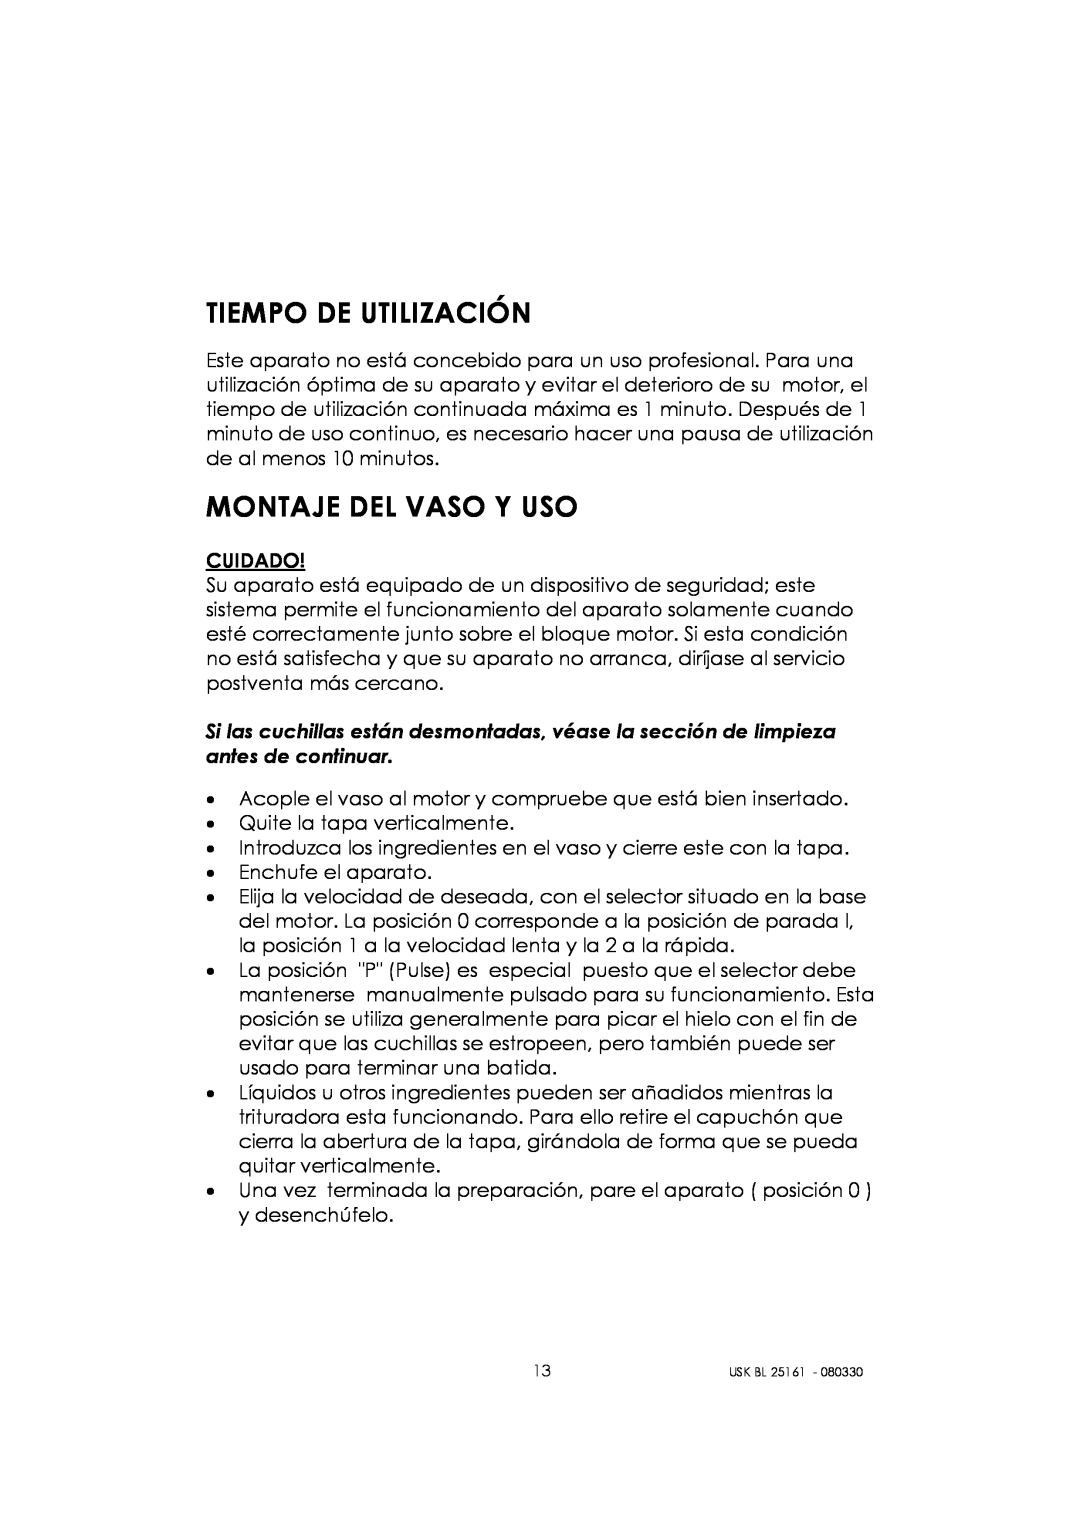 Kalorik usk bl 25161 manual Tiempo De Utilización, Montaje Del Vaso Y Uso 